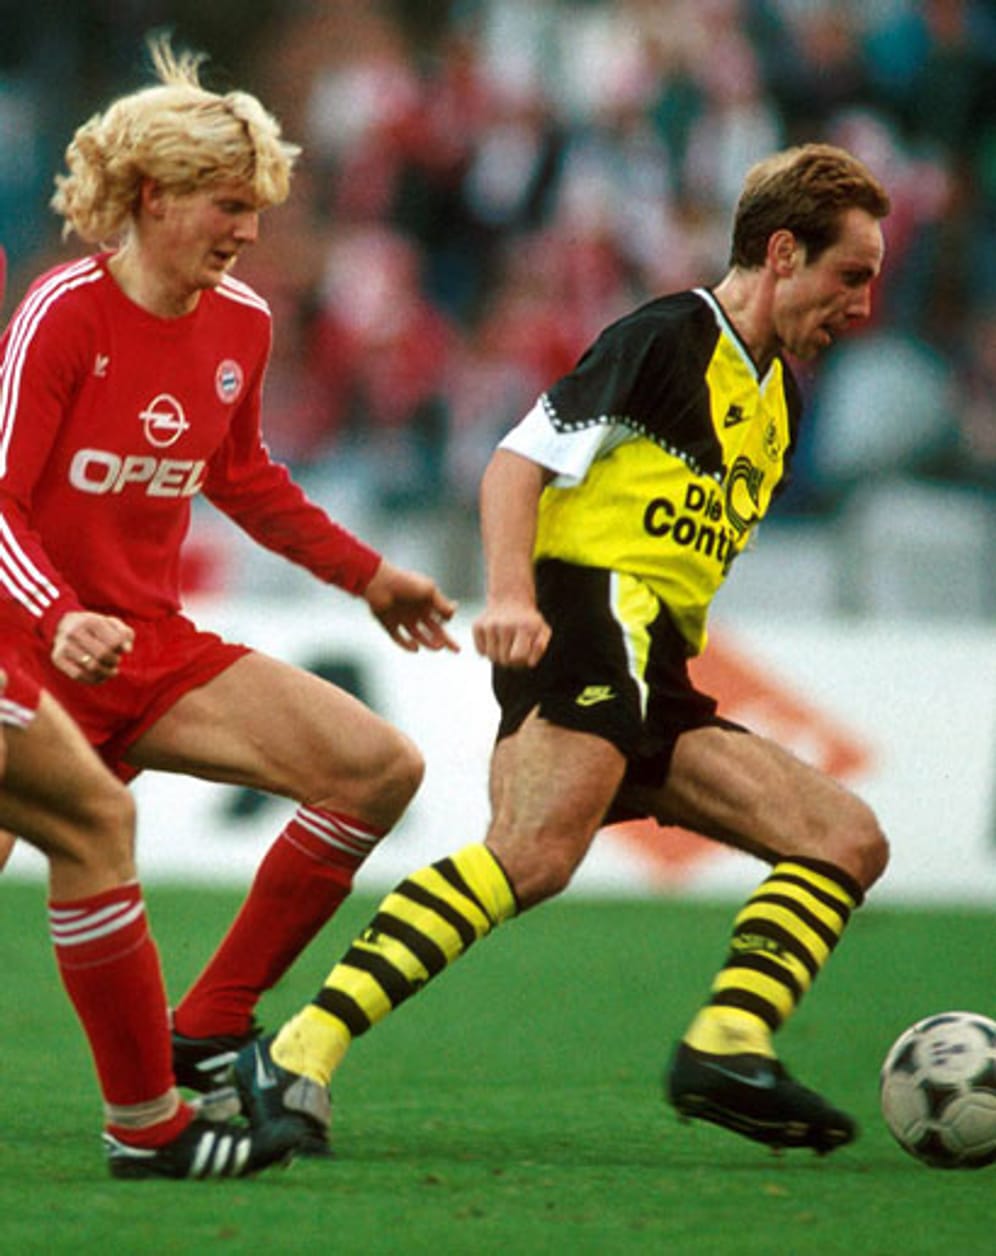 Etwas früher war Michael Rummenigge - der Bruder des Bayern-Vorstandsvorsitzenden Karl-Heinz - am Ball. Der ehemalige Nationalspieler lieferte für beide Klubs Spitzenleistungen ab und erzielte zwischen 1981 und 1993 insgesamt 80 Tore in der Bundesliga. 44 für die Bayern, 56 für den BVB. Seine Karriere ließ er dann in Japan bei den Urawa Red Diamonds ausklingen.